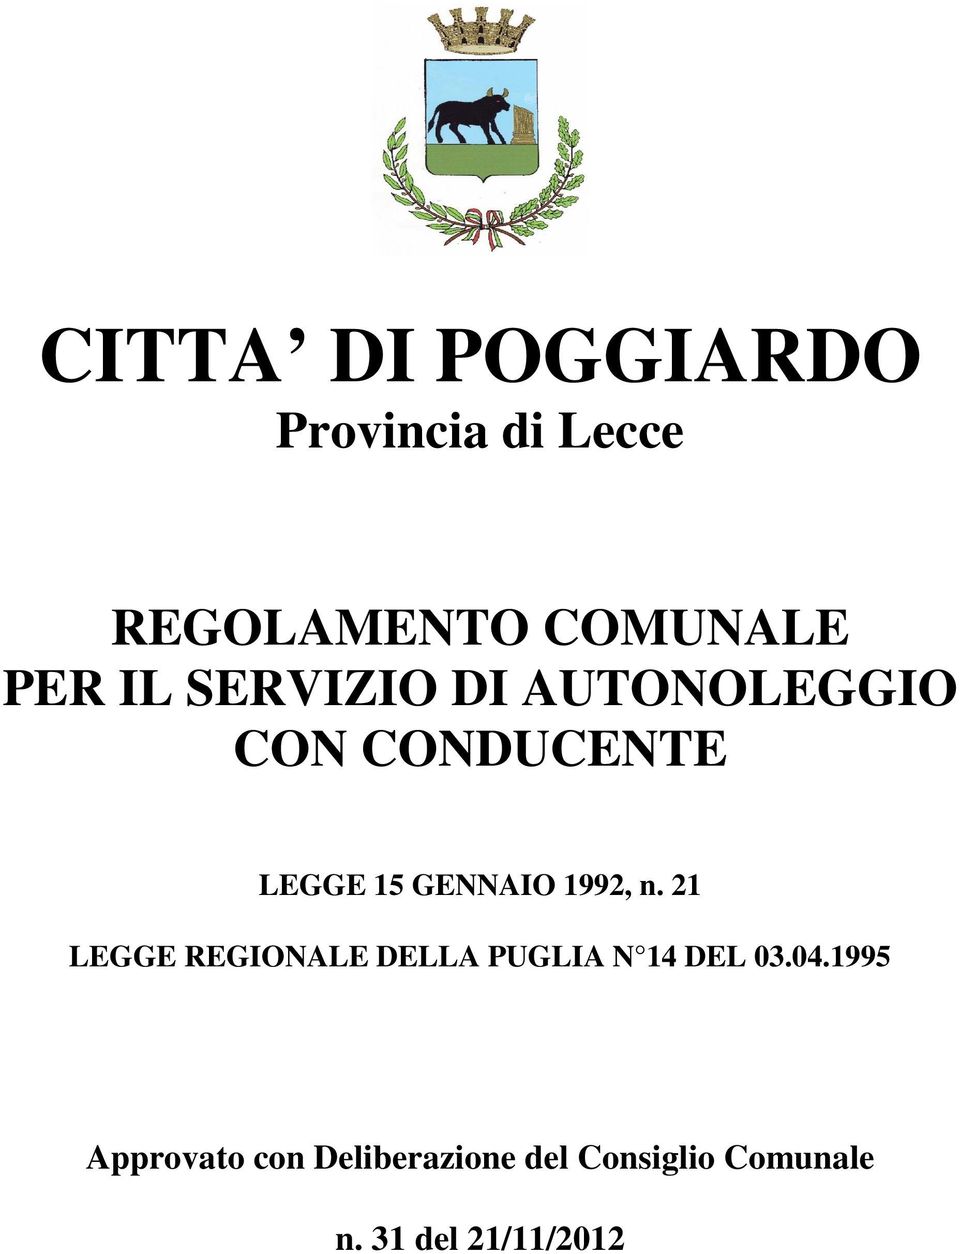 1992, n. 21 LEGGE REGIONALE DELLA PUGLIA N 14 DEL 03.04.